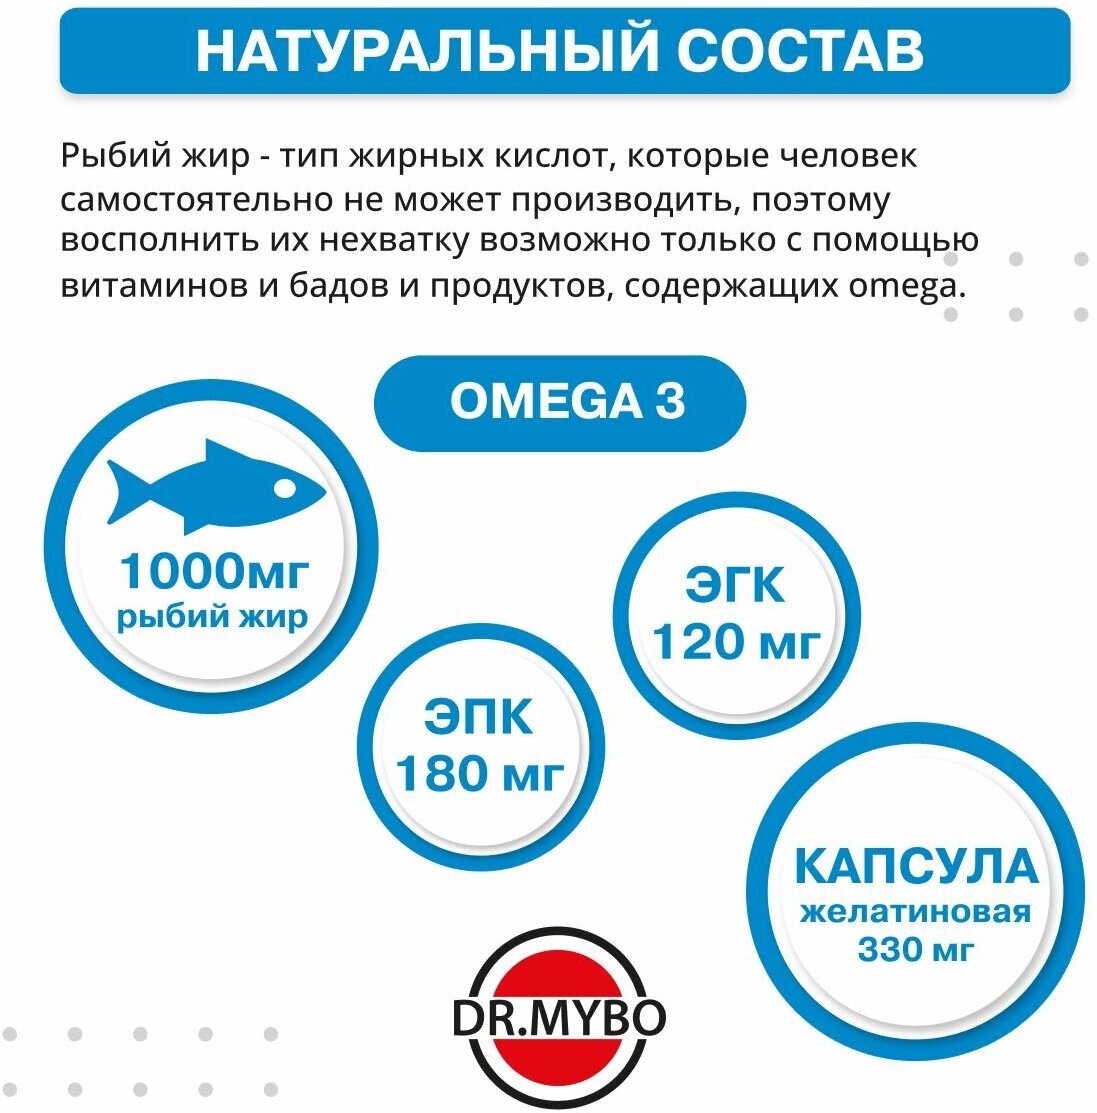 Омега-3, рыбий жир камчатского лосося, 90 капсул, 1000 мг. Триглицеридная форма Omega 3